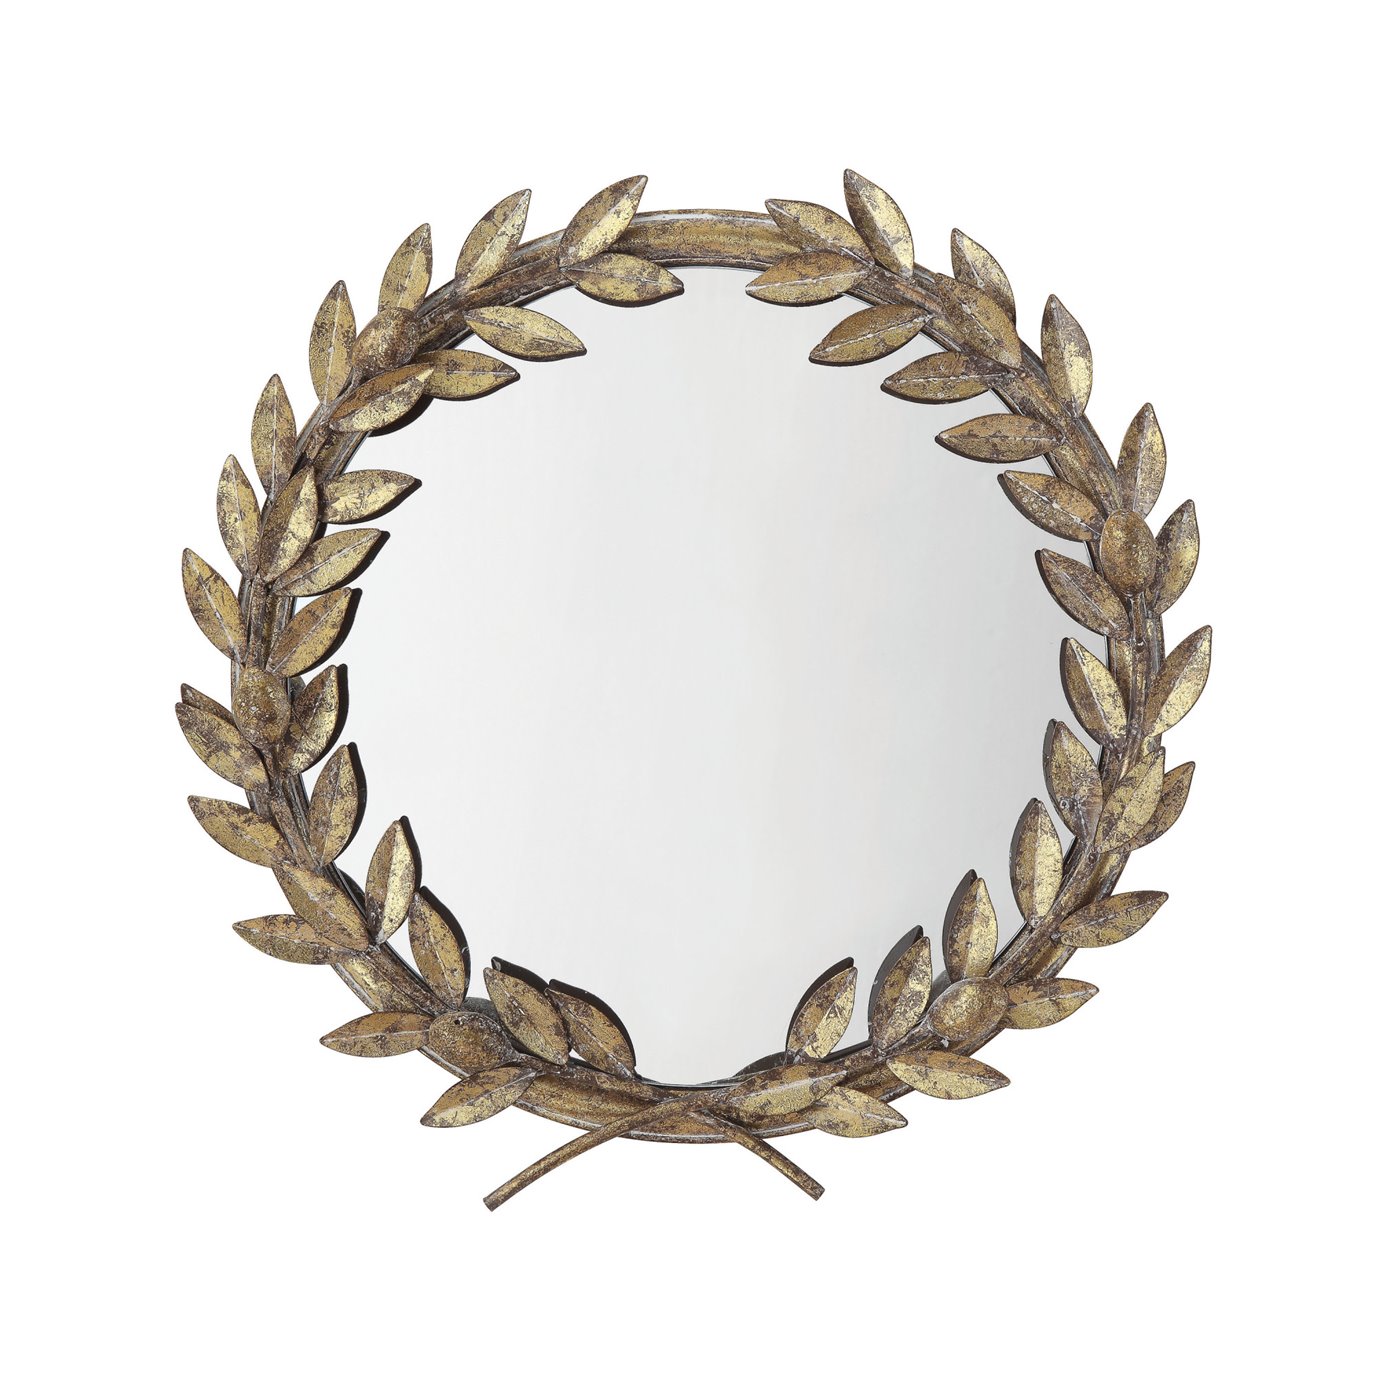 Round Antique Gold Metal Laurel Wreath Wall Mirror